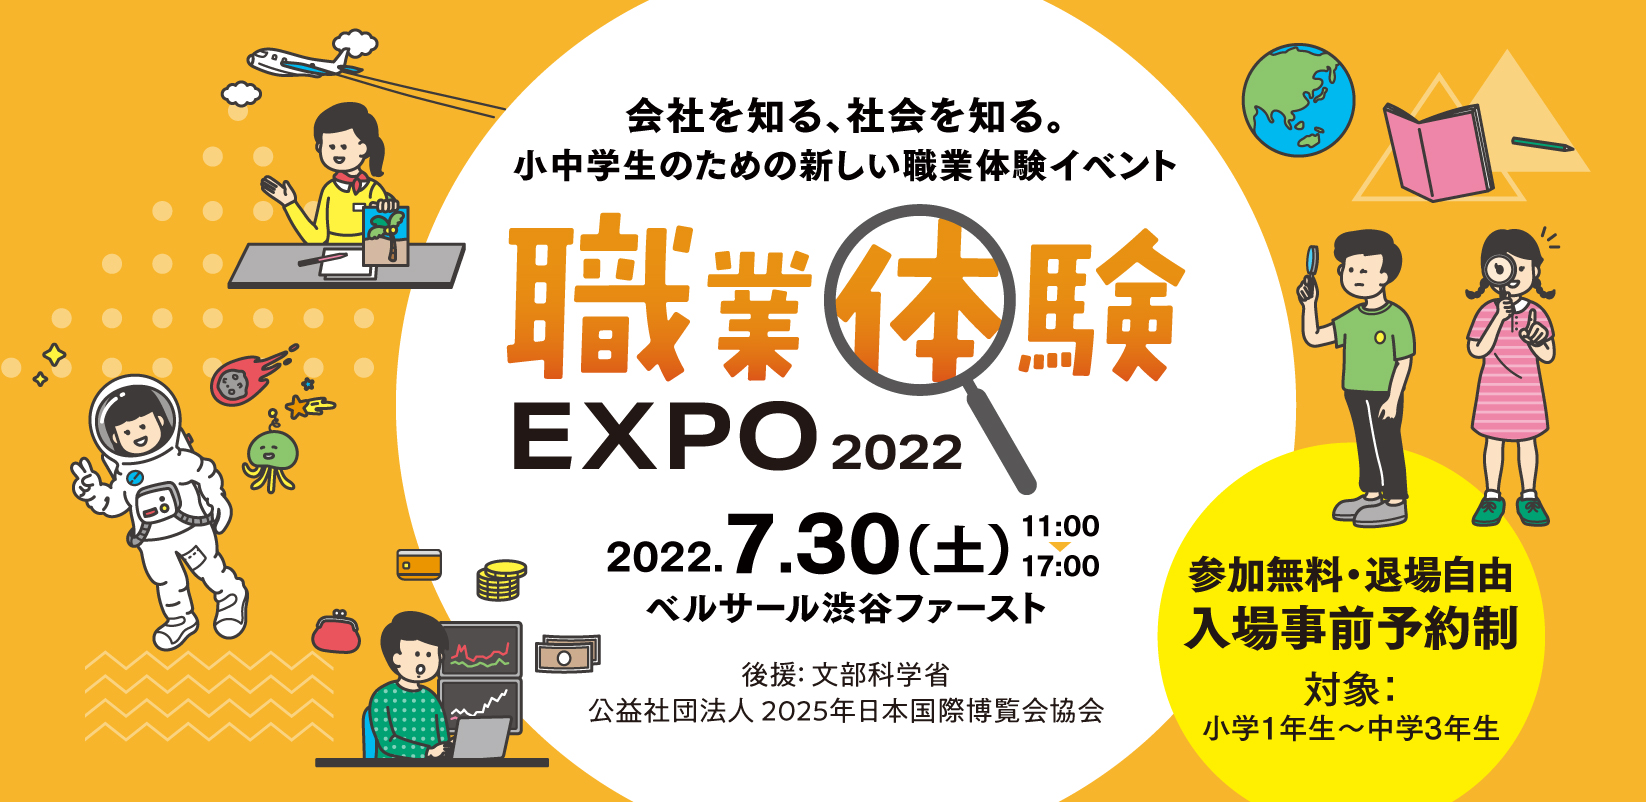 小中学生のための新しい職業体験イベント 職業体験expo 22 7月30日に渋谷で開催 オンライン参加も可能 こどもとit